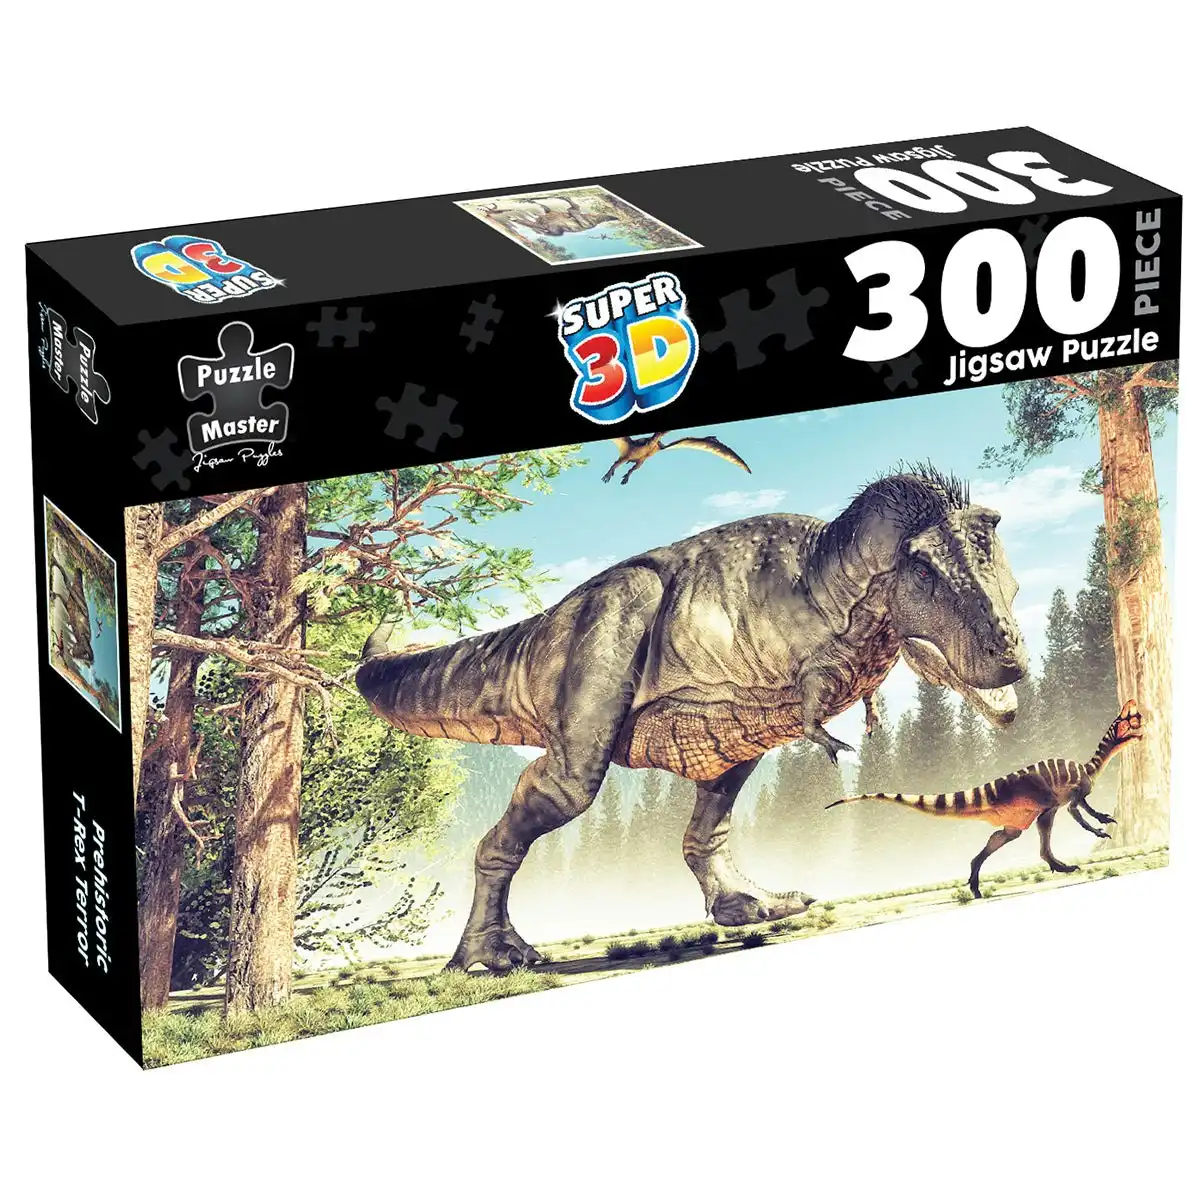 300-Piece Jigsaw Puzzle Super 3D, T-Rex